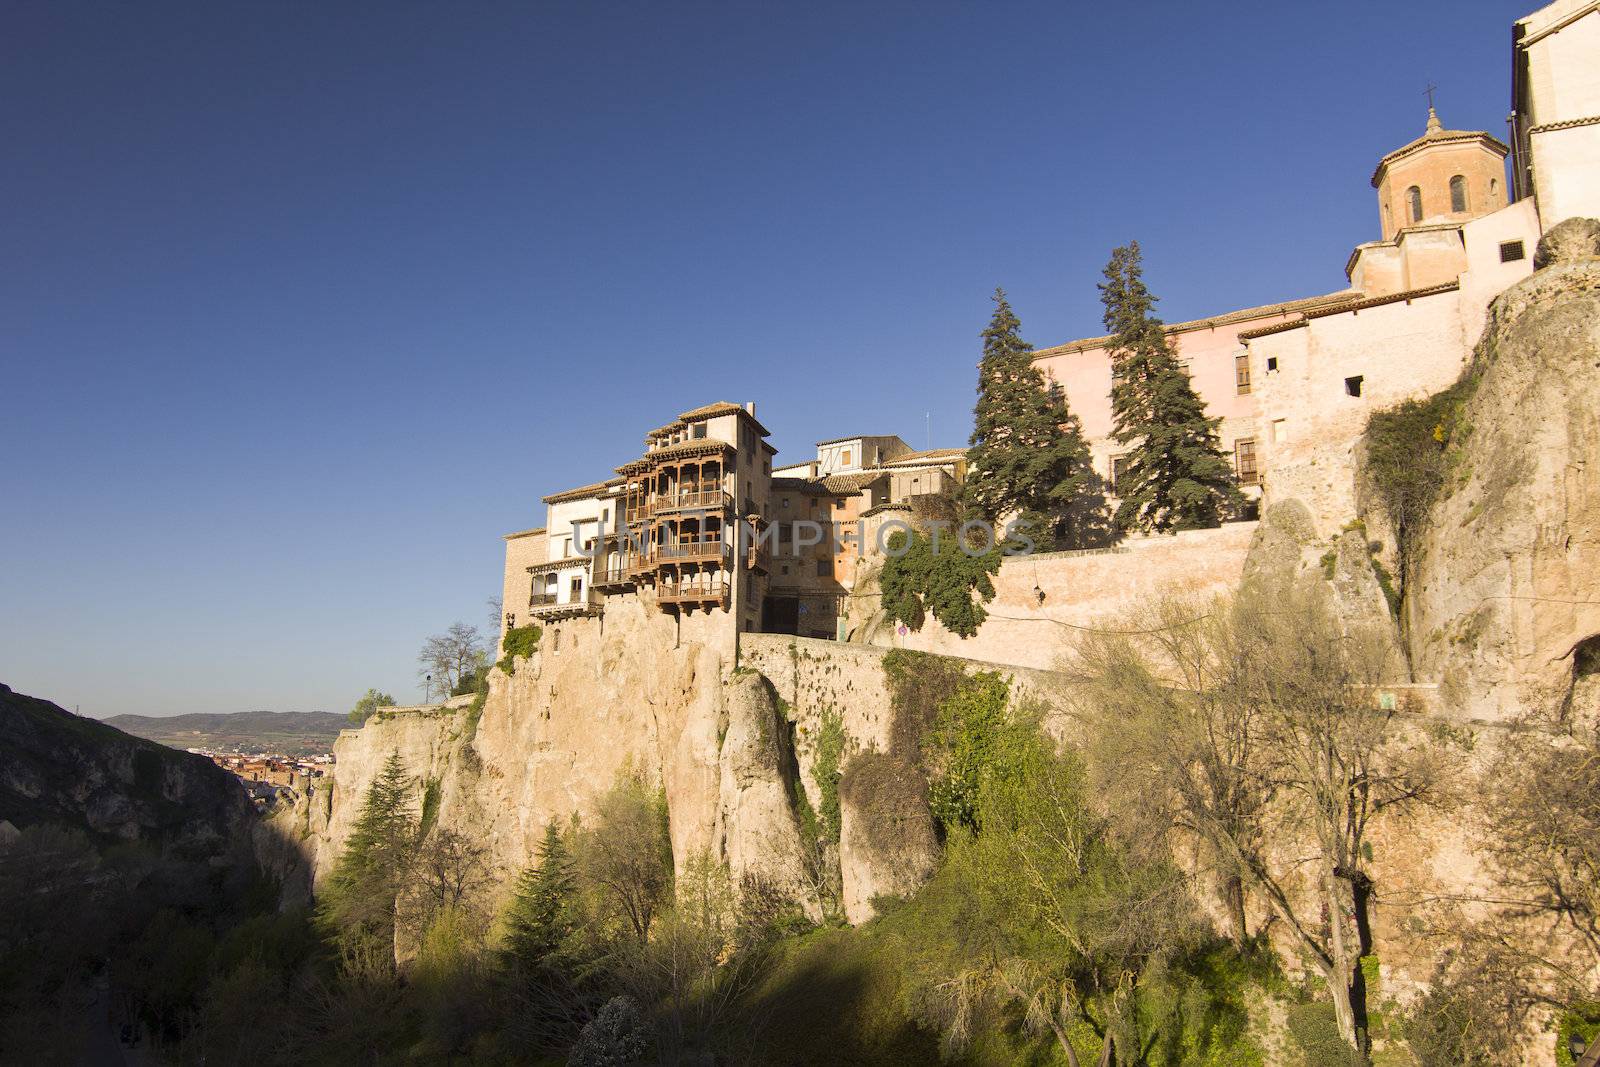 The medieval town of Cuenca, Spain by dannyus